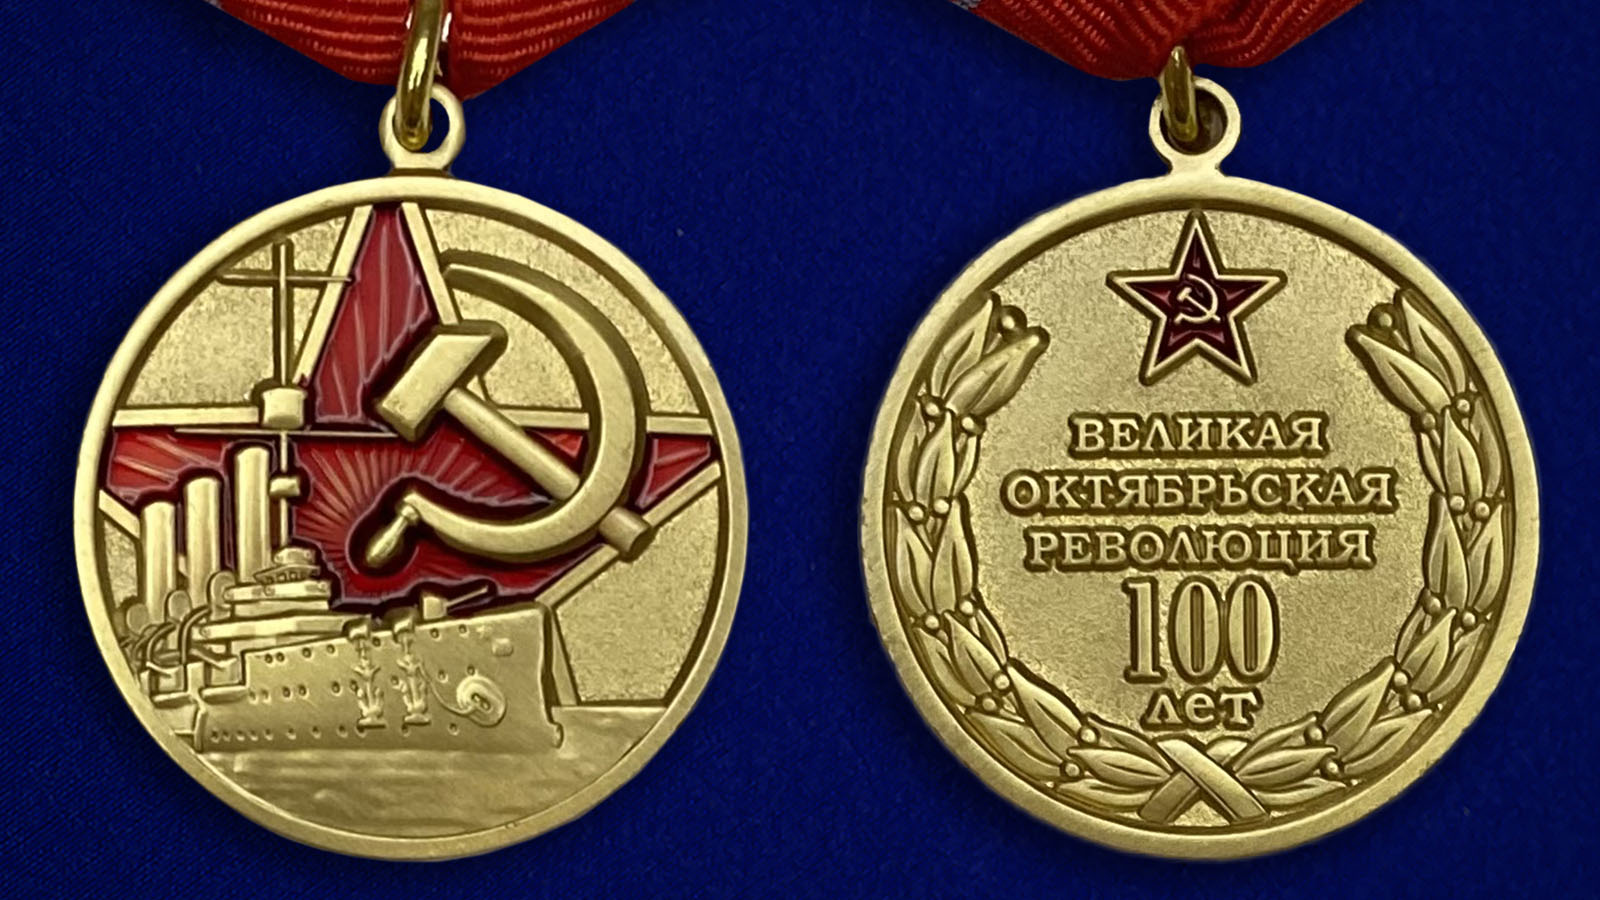 Купить юбилейную медаль к 100-летию Великой Октябрьской Революции